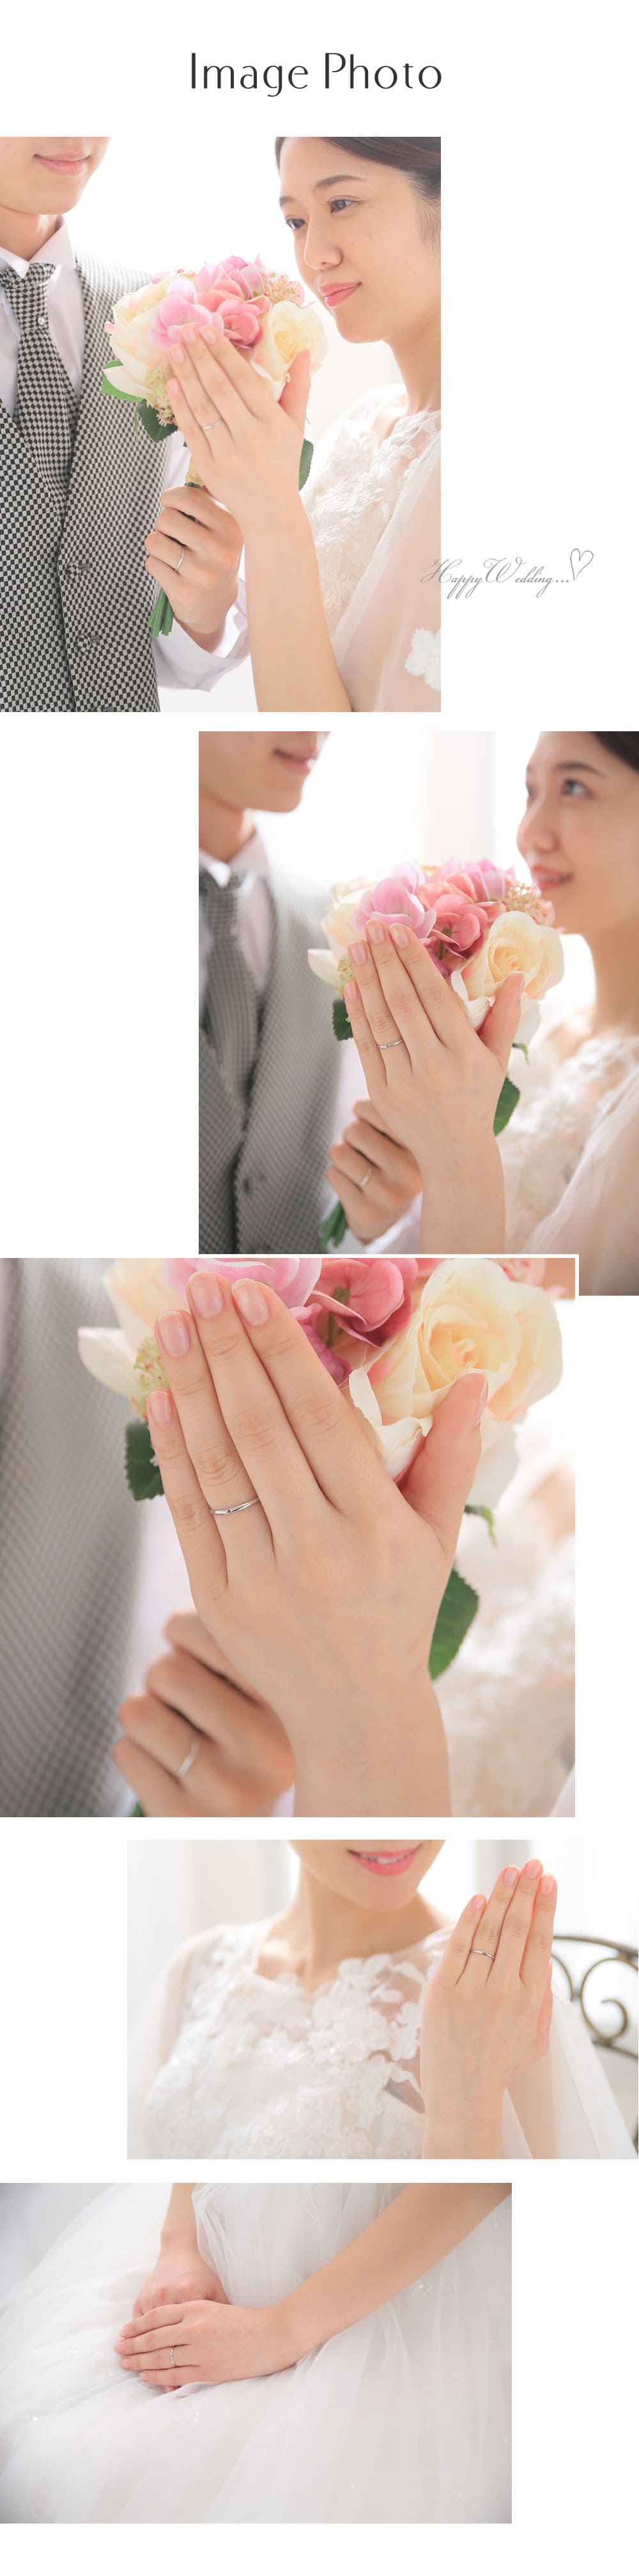 Fissプラチナ結婚指輪モデル着用イメージ